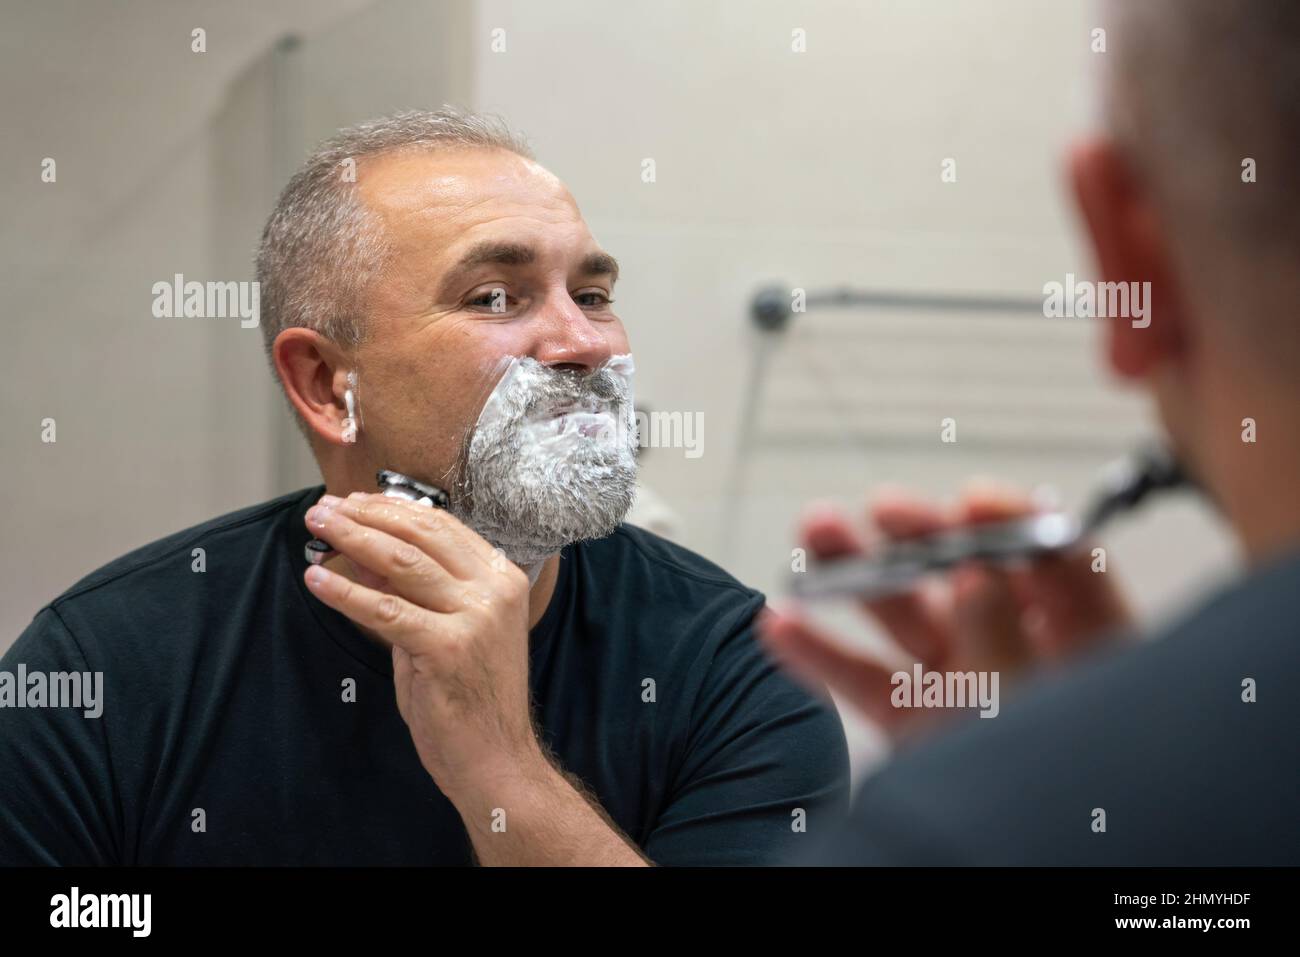 Ein hübscher weißhaariger bärtiger Mann, der sich seinen Bart abrasieren  und in einen Spiegel schaut. Konzept eines sich ändernden Stils  Stockfotografie - Alamy